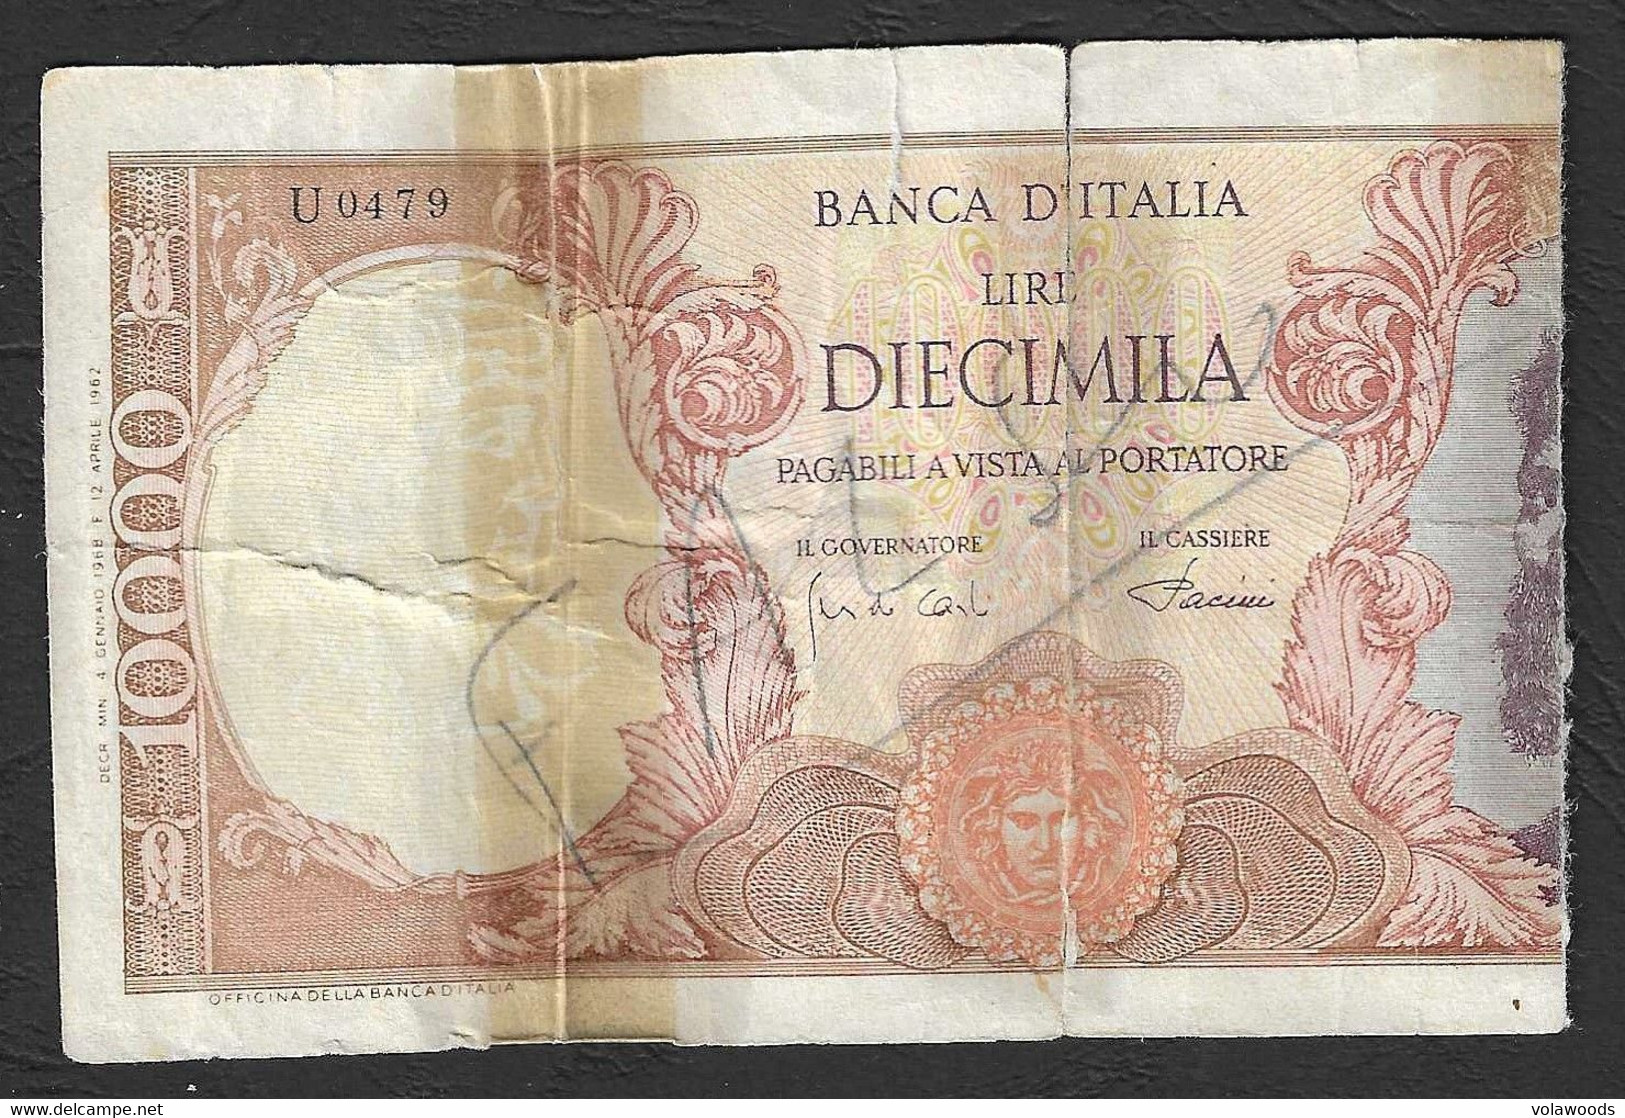 Italia - Banconota Circolata Da 10.000 Lire "Buonarroti" Falso D'epoca Circolato P-97d - 1968 - [ 8] Specimen